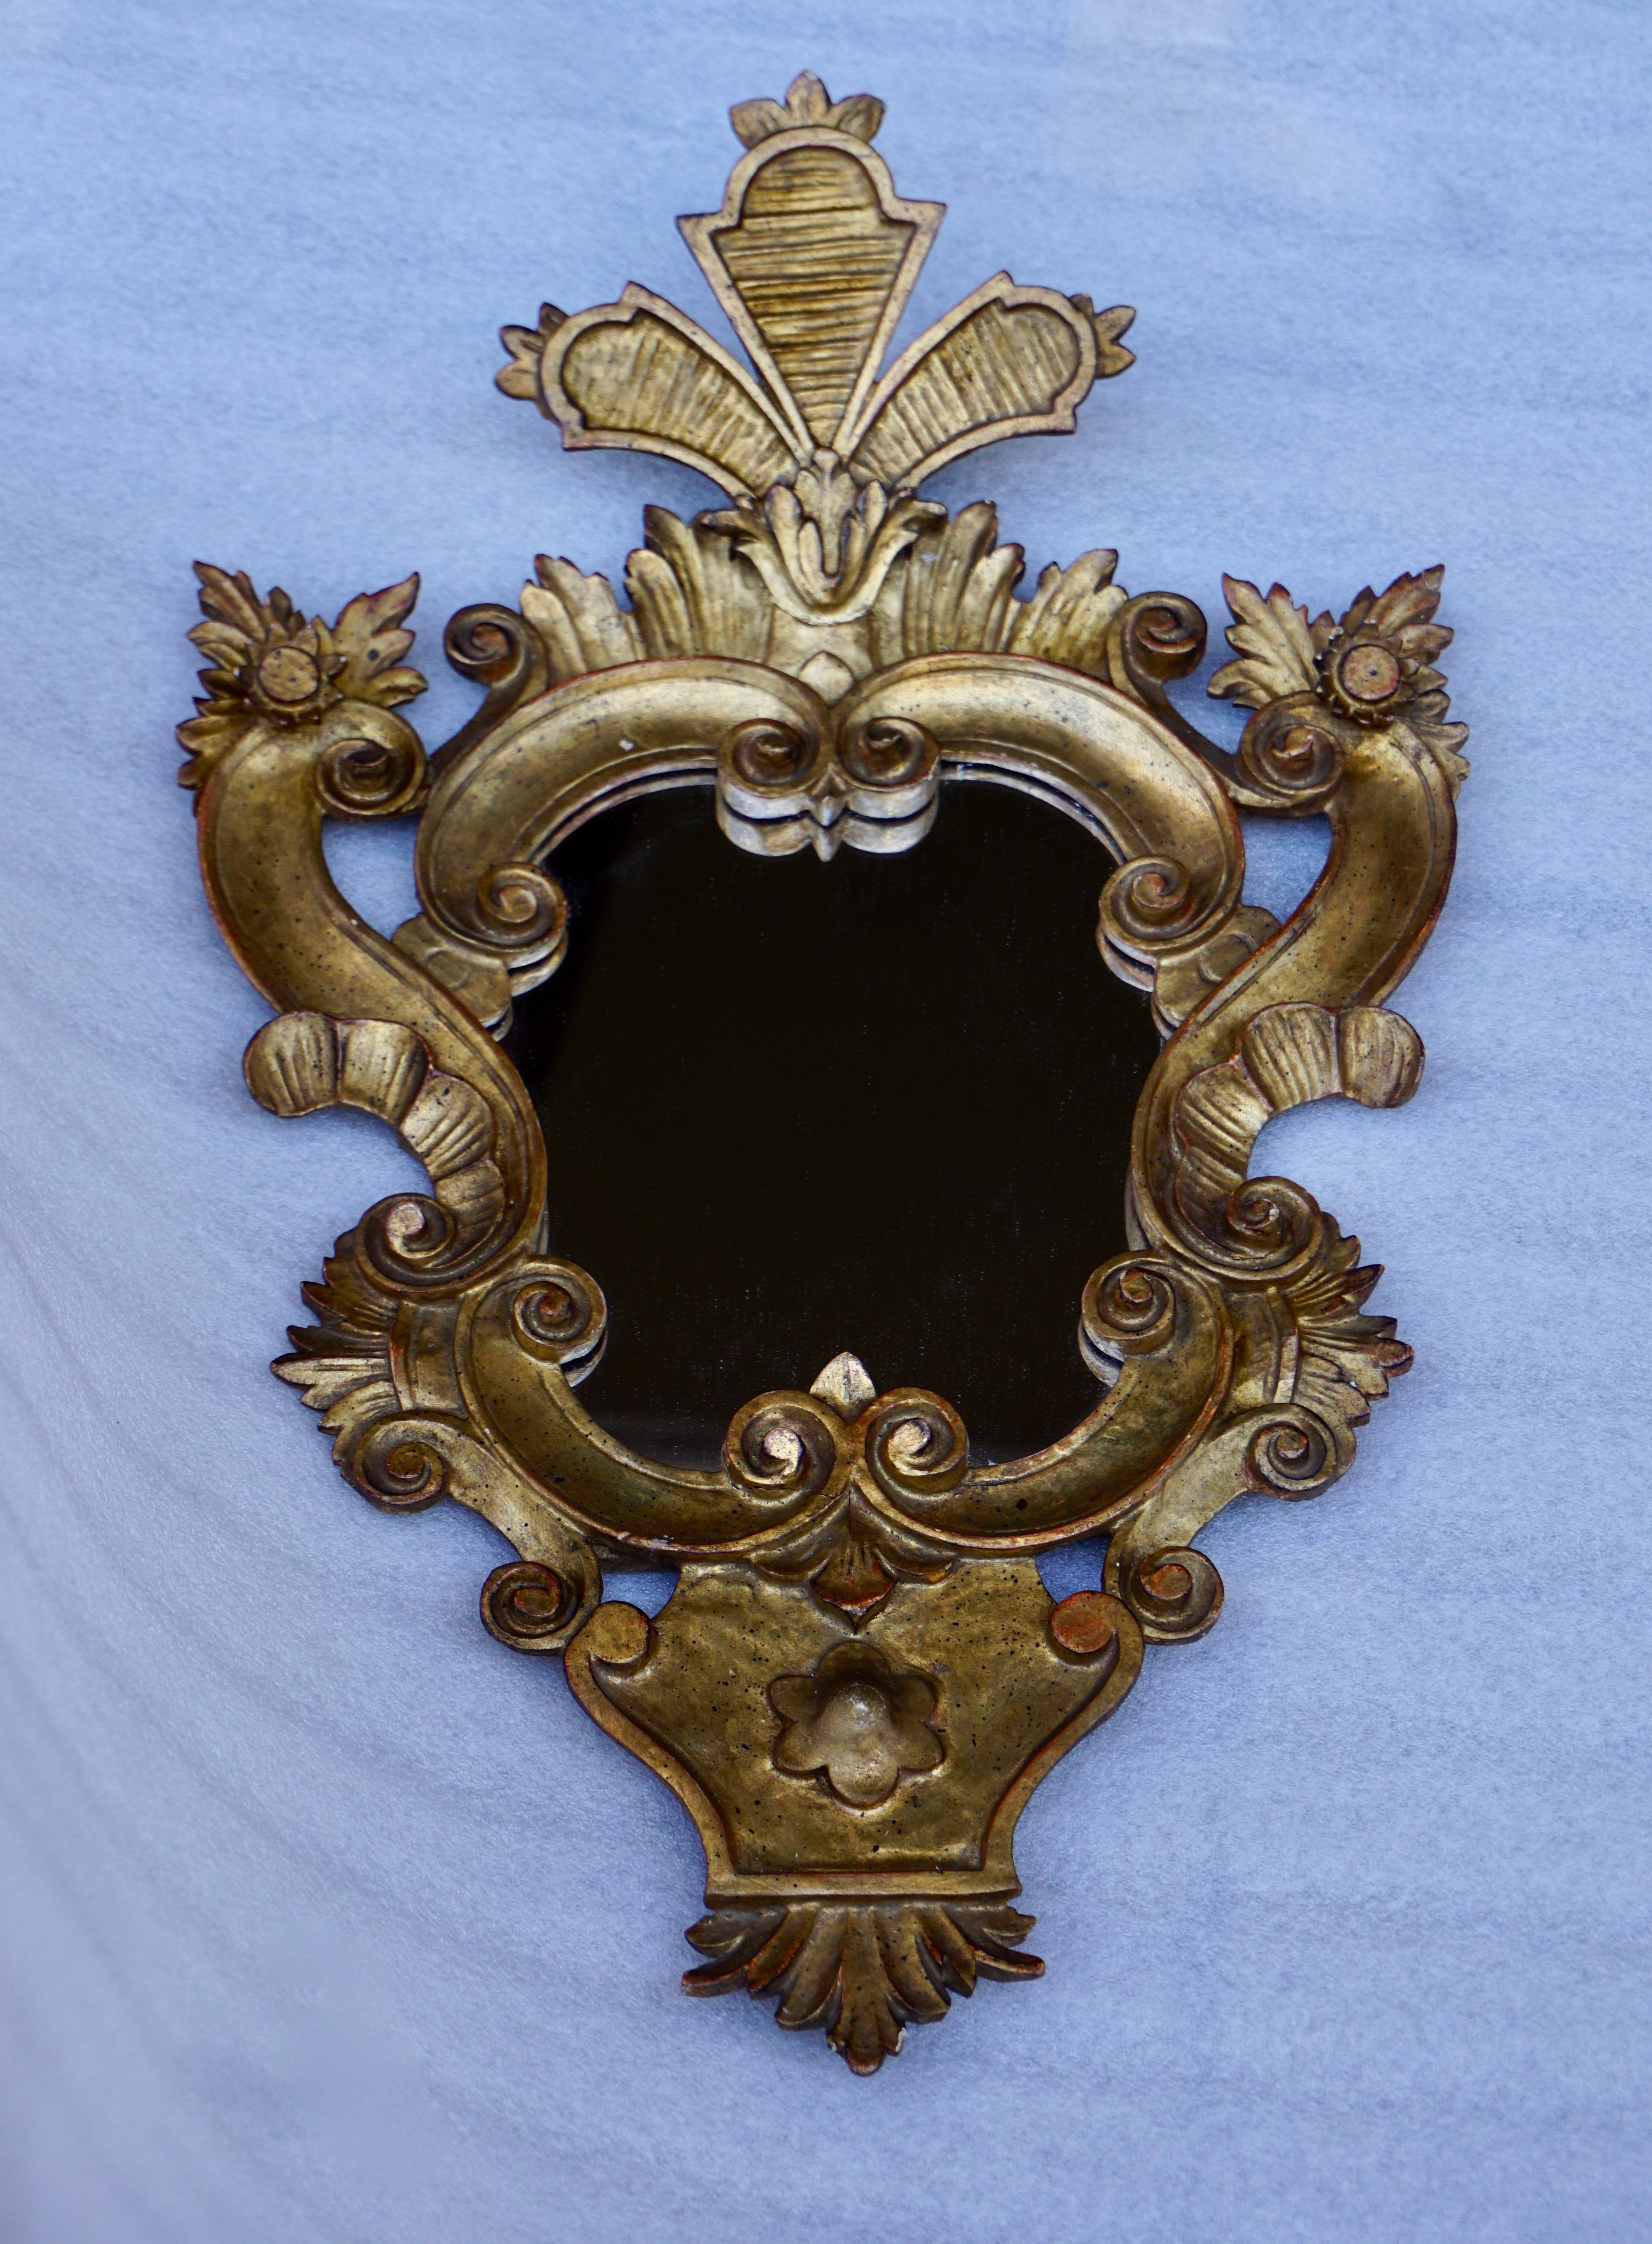 Magnifique grand miroir vénitien de style Rococo en bois sculpté et doré.
Mesures : Hauteur 60 cm.
Largeur 38 cm.
Profondeur 10 cm.